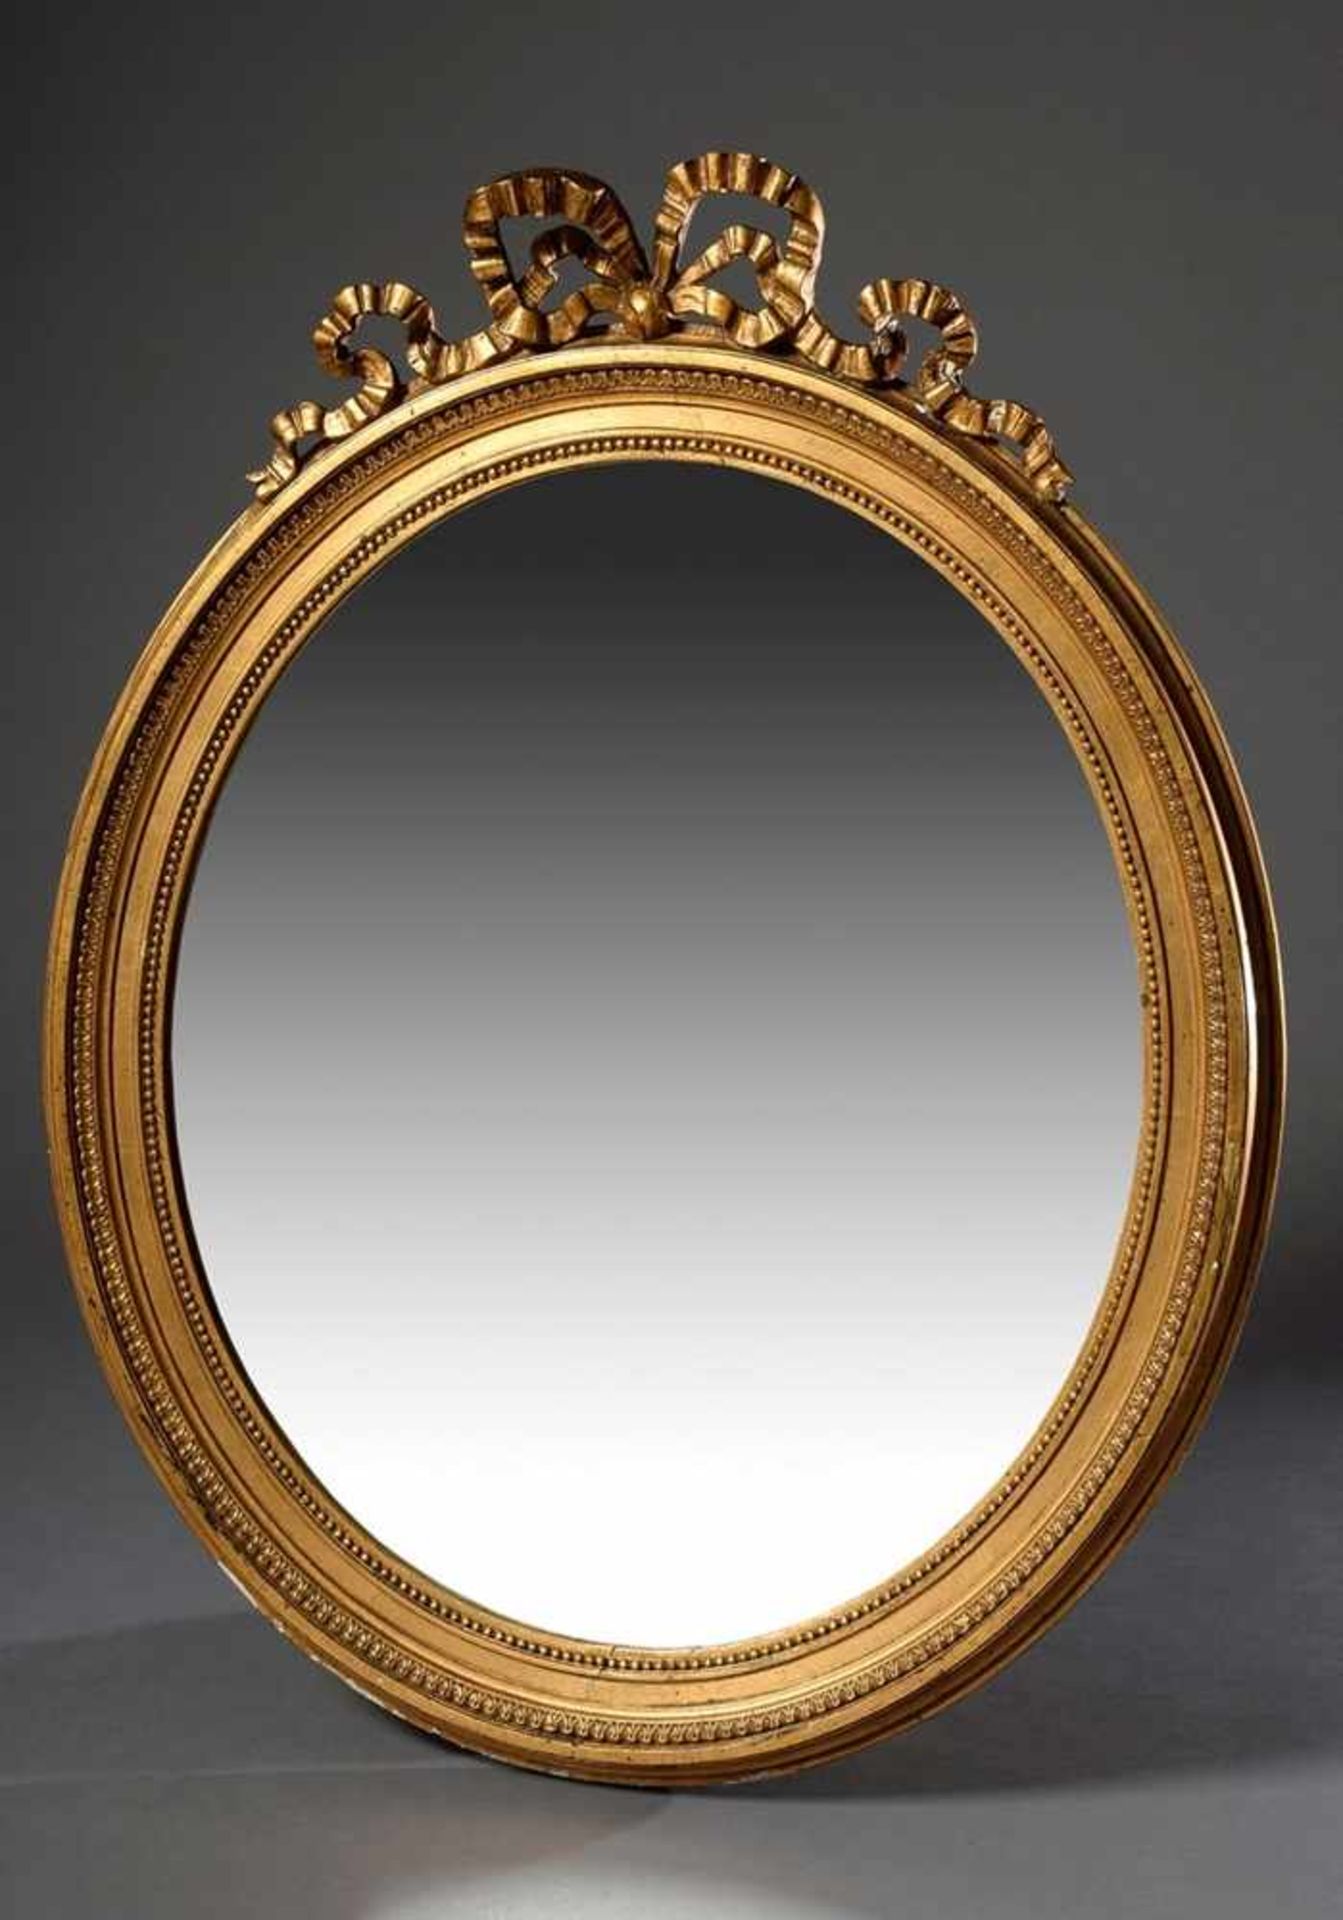 Ovaler vergoldeter Stuckspiegel mit Schleife im Louis XVI Stil, 77x61cm, etwas defektOval gilded